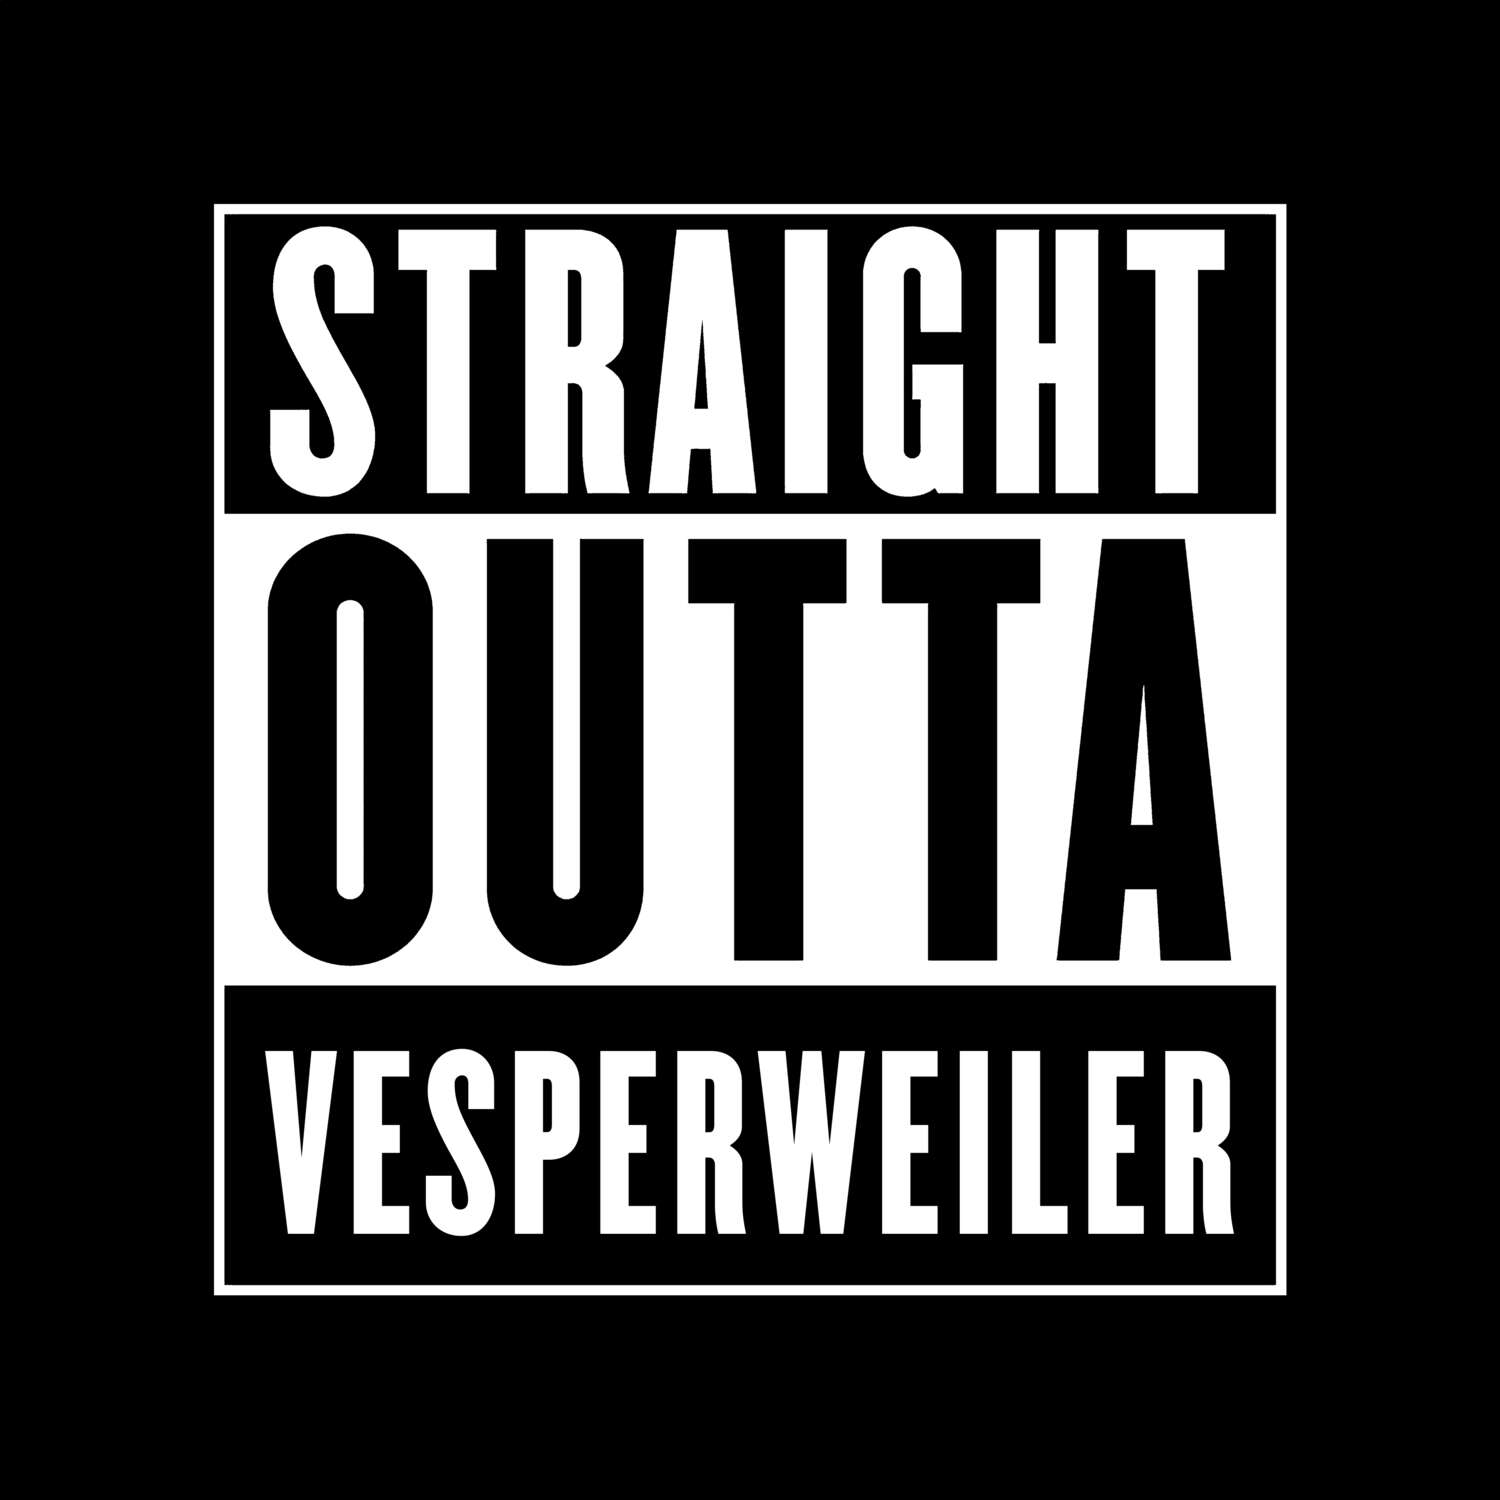 Vesperweiler T-Shirt »Straight Outta«